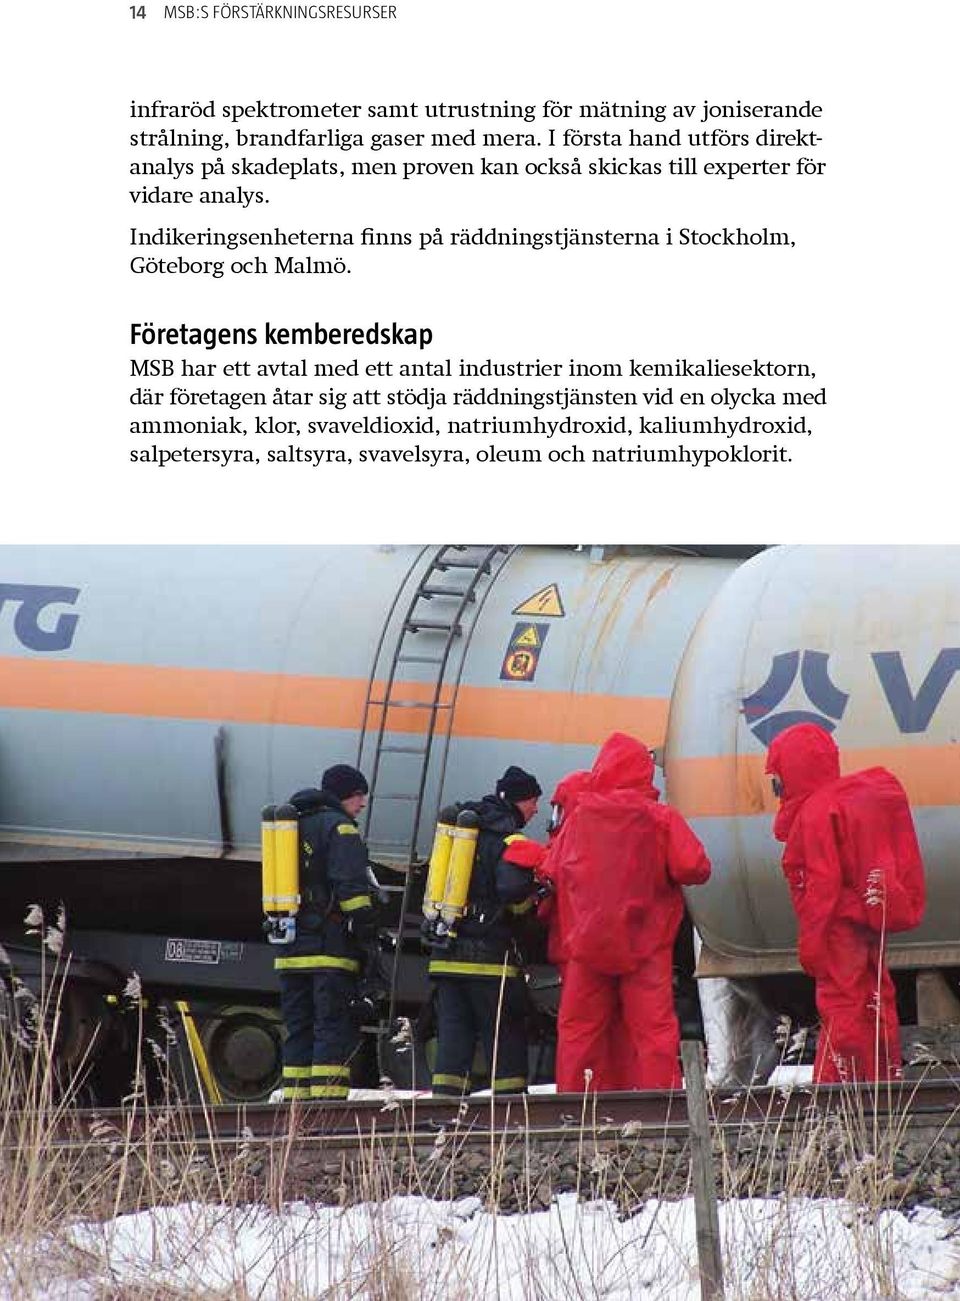 Indikeringsenheterna finns på räddningstjänsterna i Stockholm, Göteborg och Malmö.